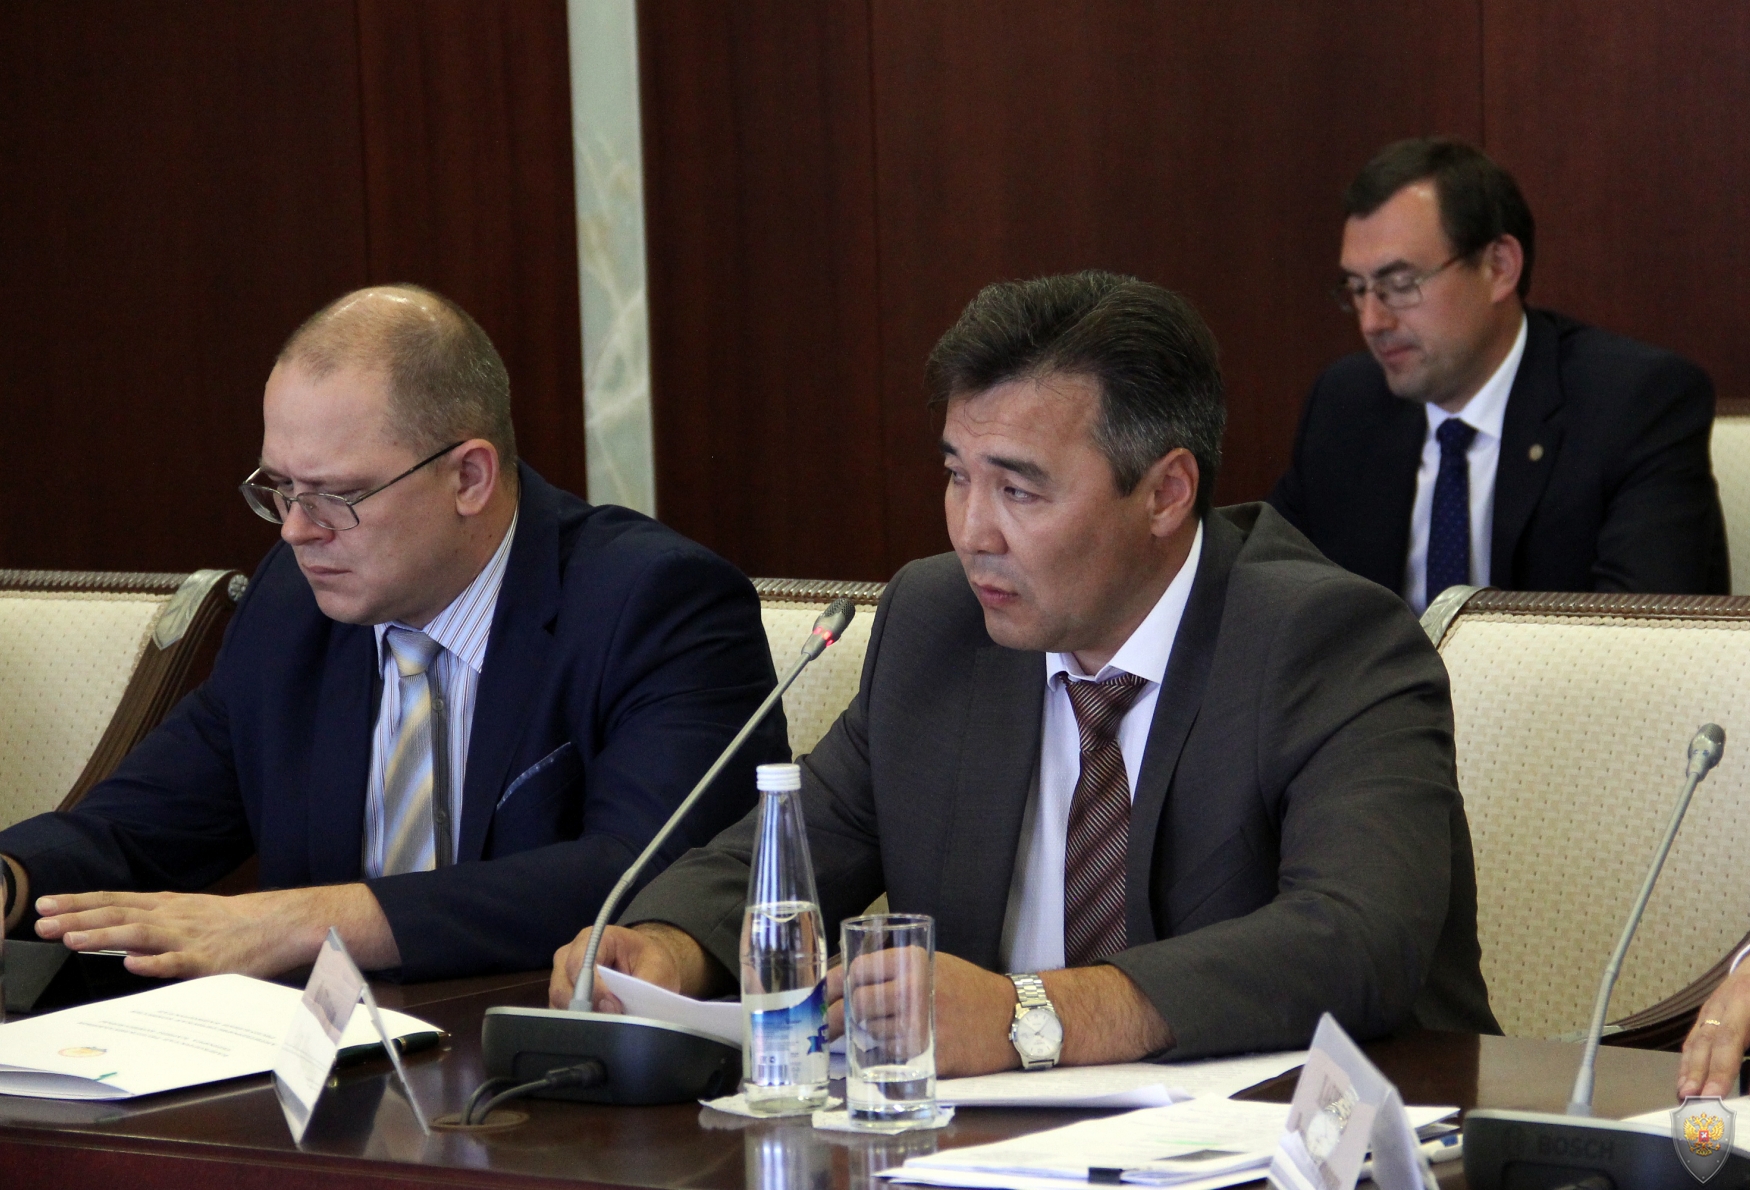 Глава Республики Башкортостан Рустэм Закиевич Хамитов провёл очередное заседание антитеррористической комиссии Республики Башкортостан